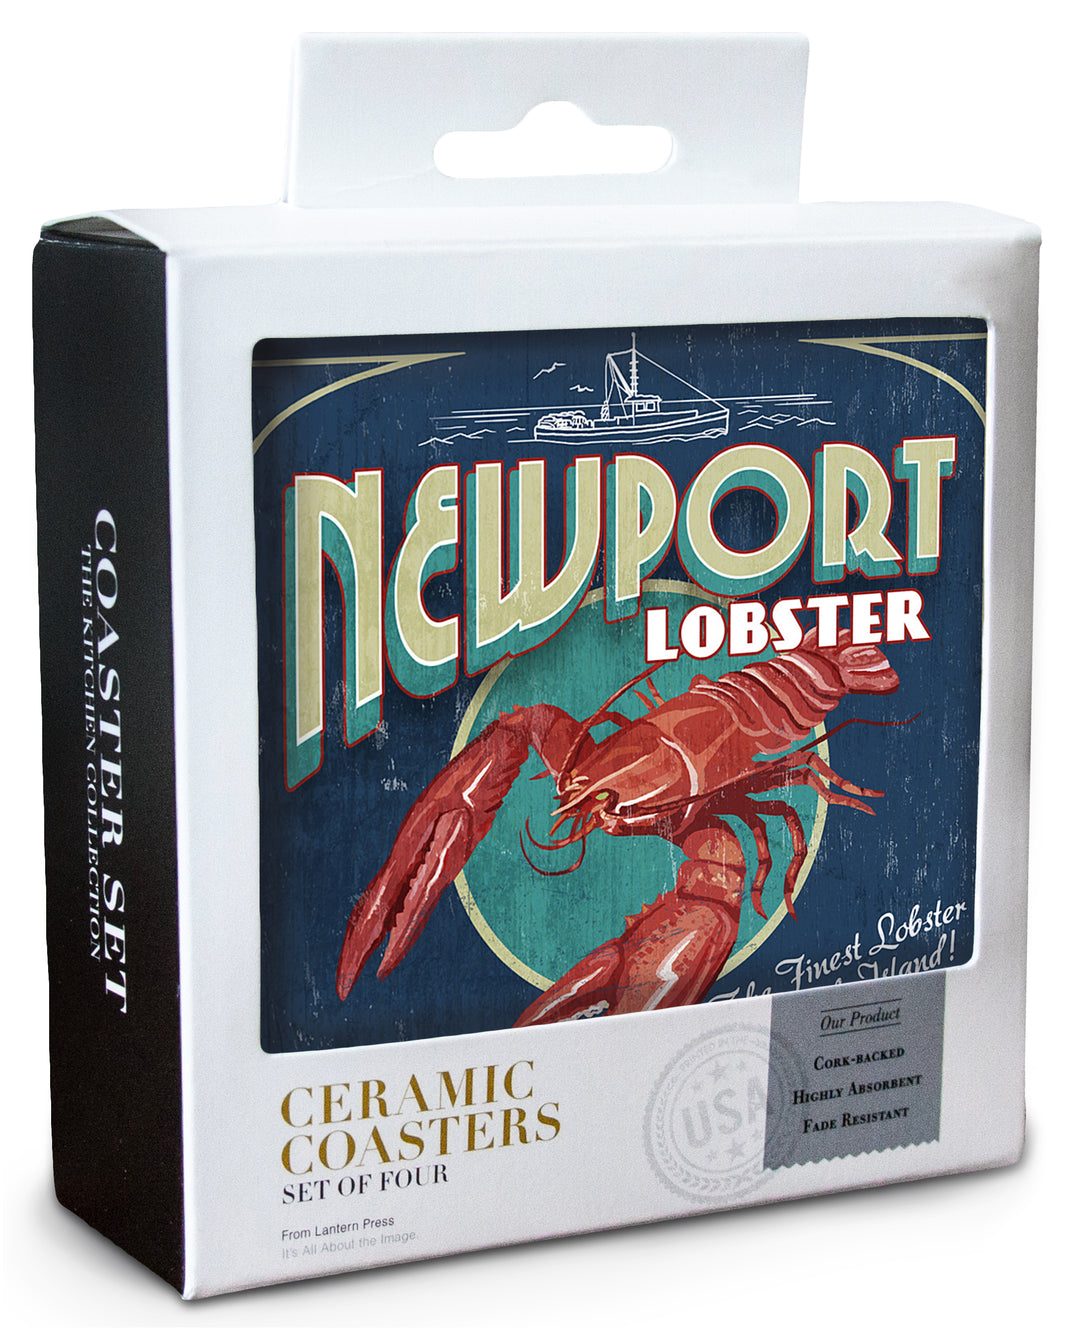 Newport, Rhode Island, Lobster Vintage Sign, Coaster Set